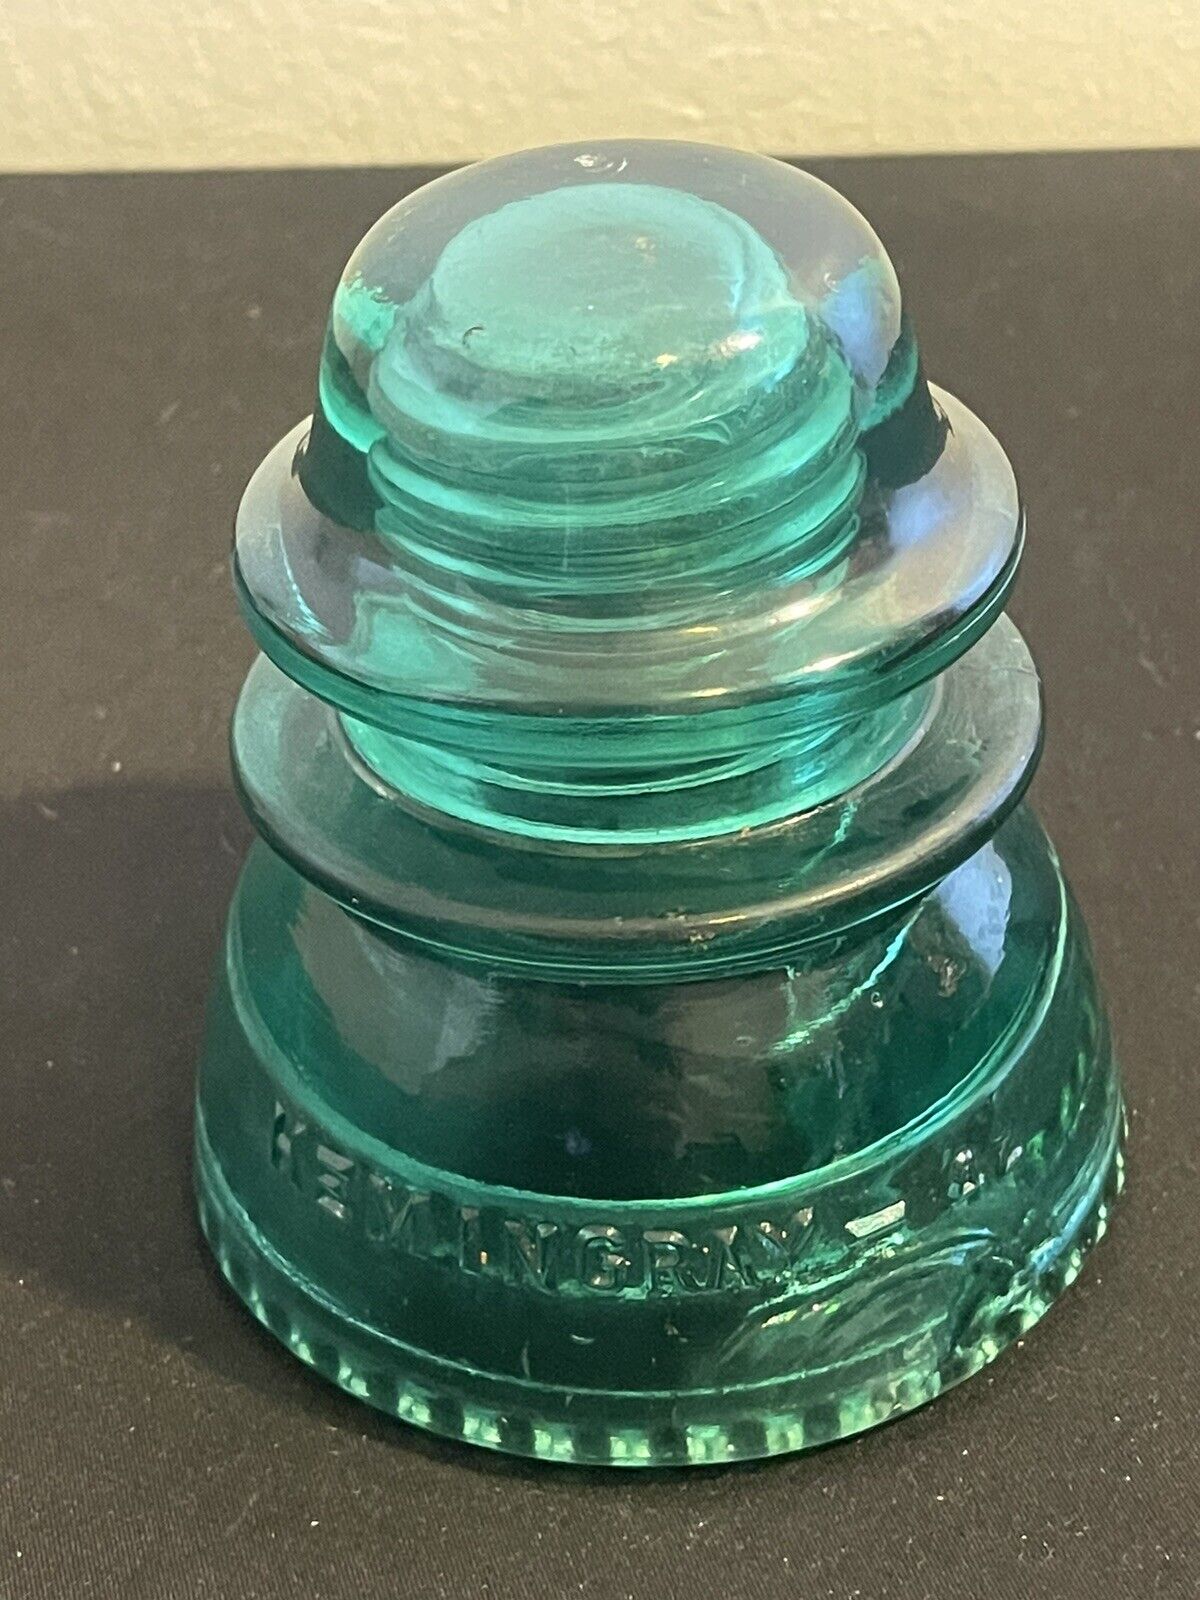 Hemingray Aqua Blue/Green No 42 MADE IN U.S.A. Vintage Glass Insulator